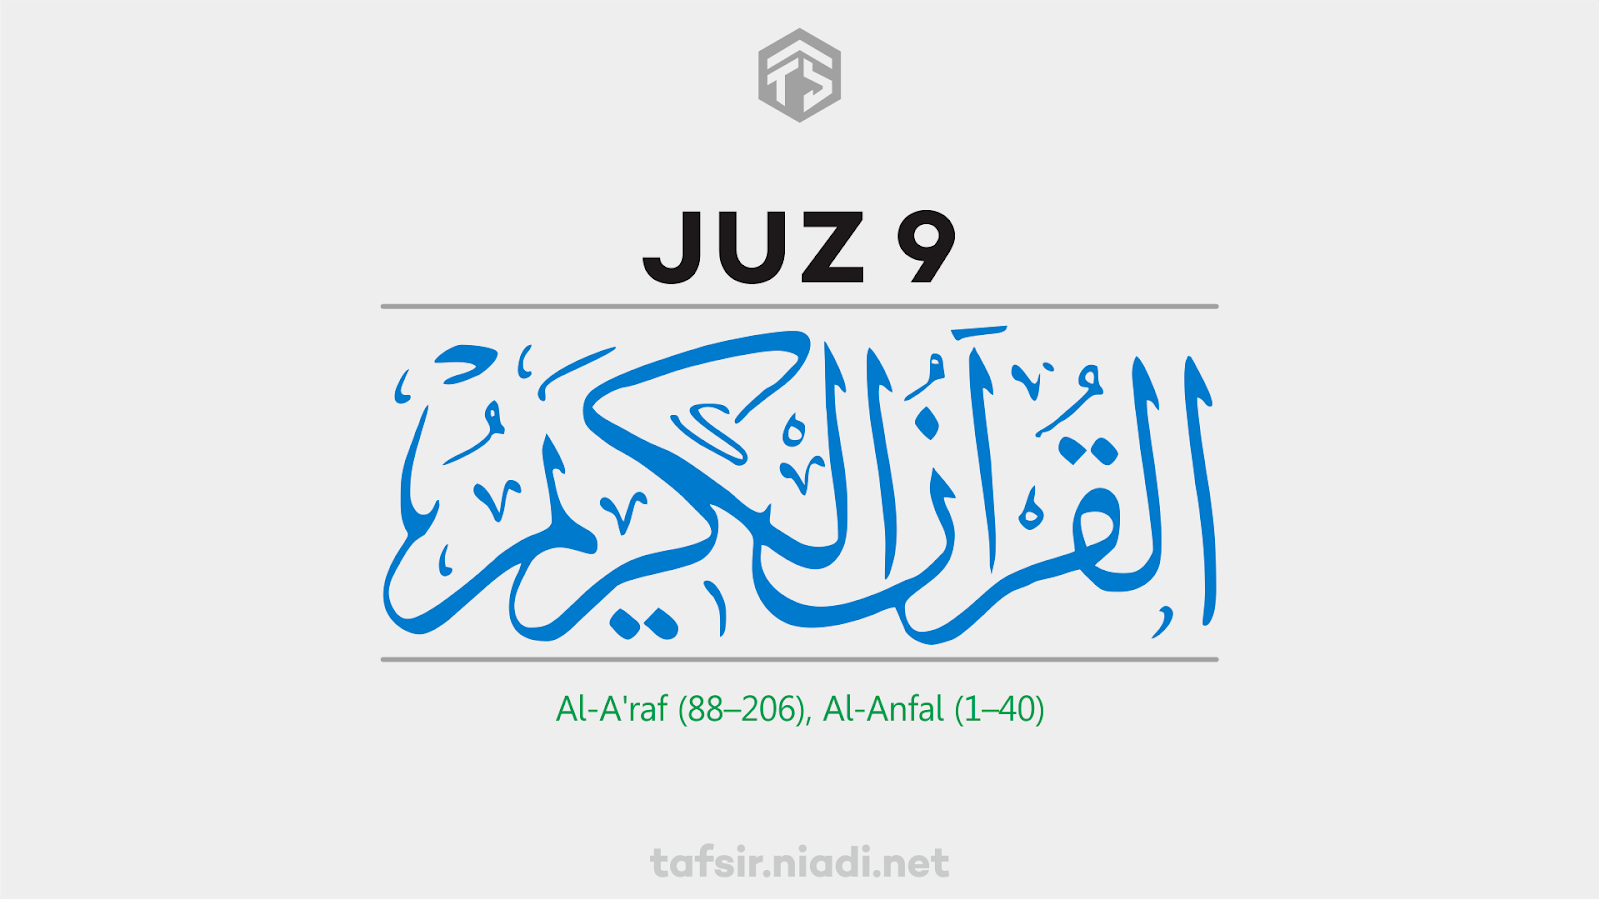 Baca online Alquran Juz 9, Surah Al-A'raf ayat 88–206, Al-Anfal ayat 1–40. Website Alquran online cepat, ringan, dan hemat kuota, tafsir.niadi.net